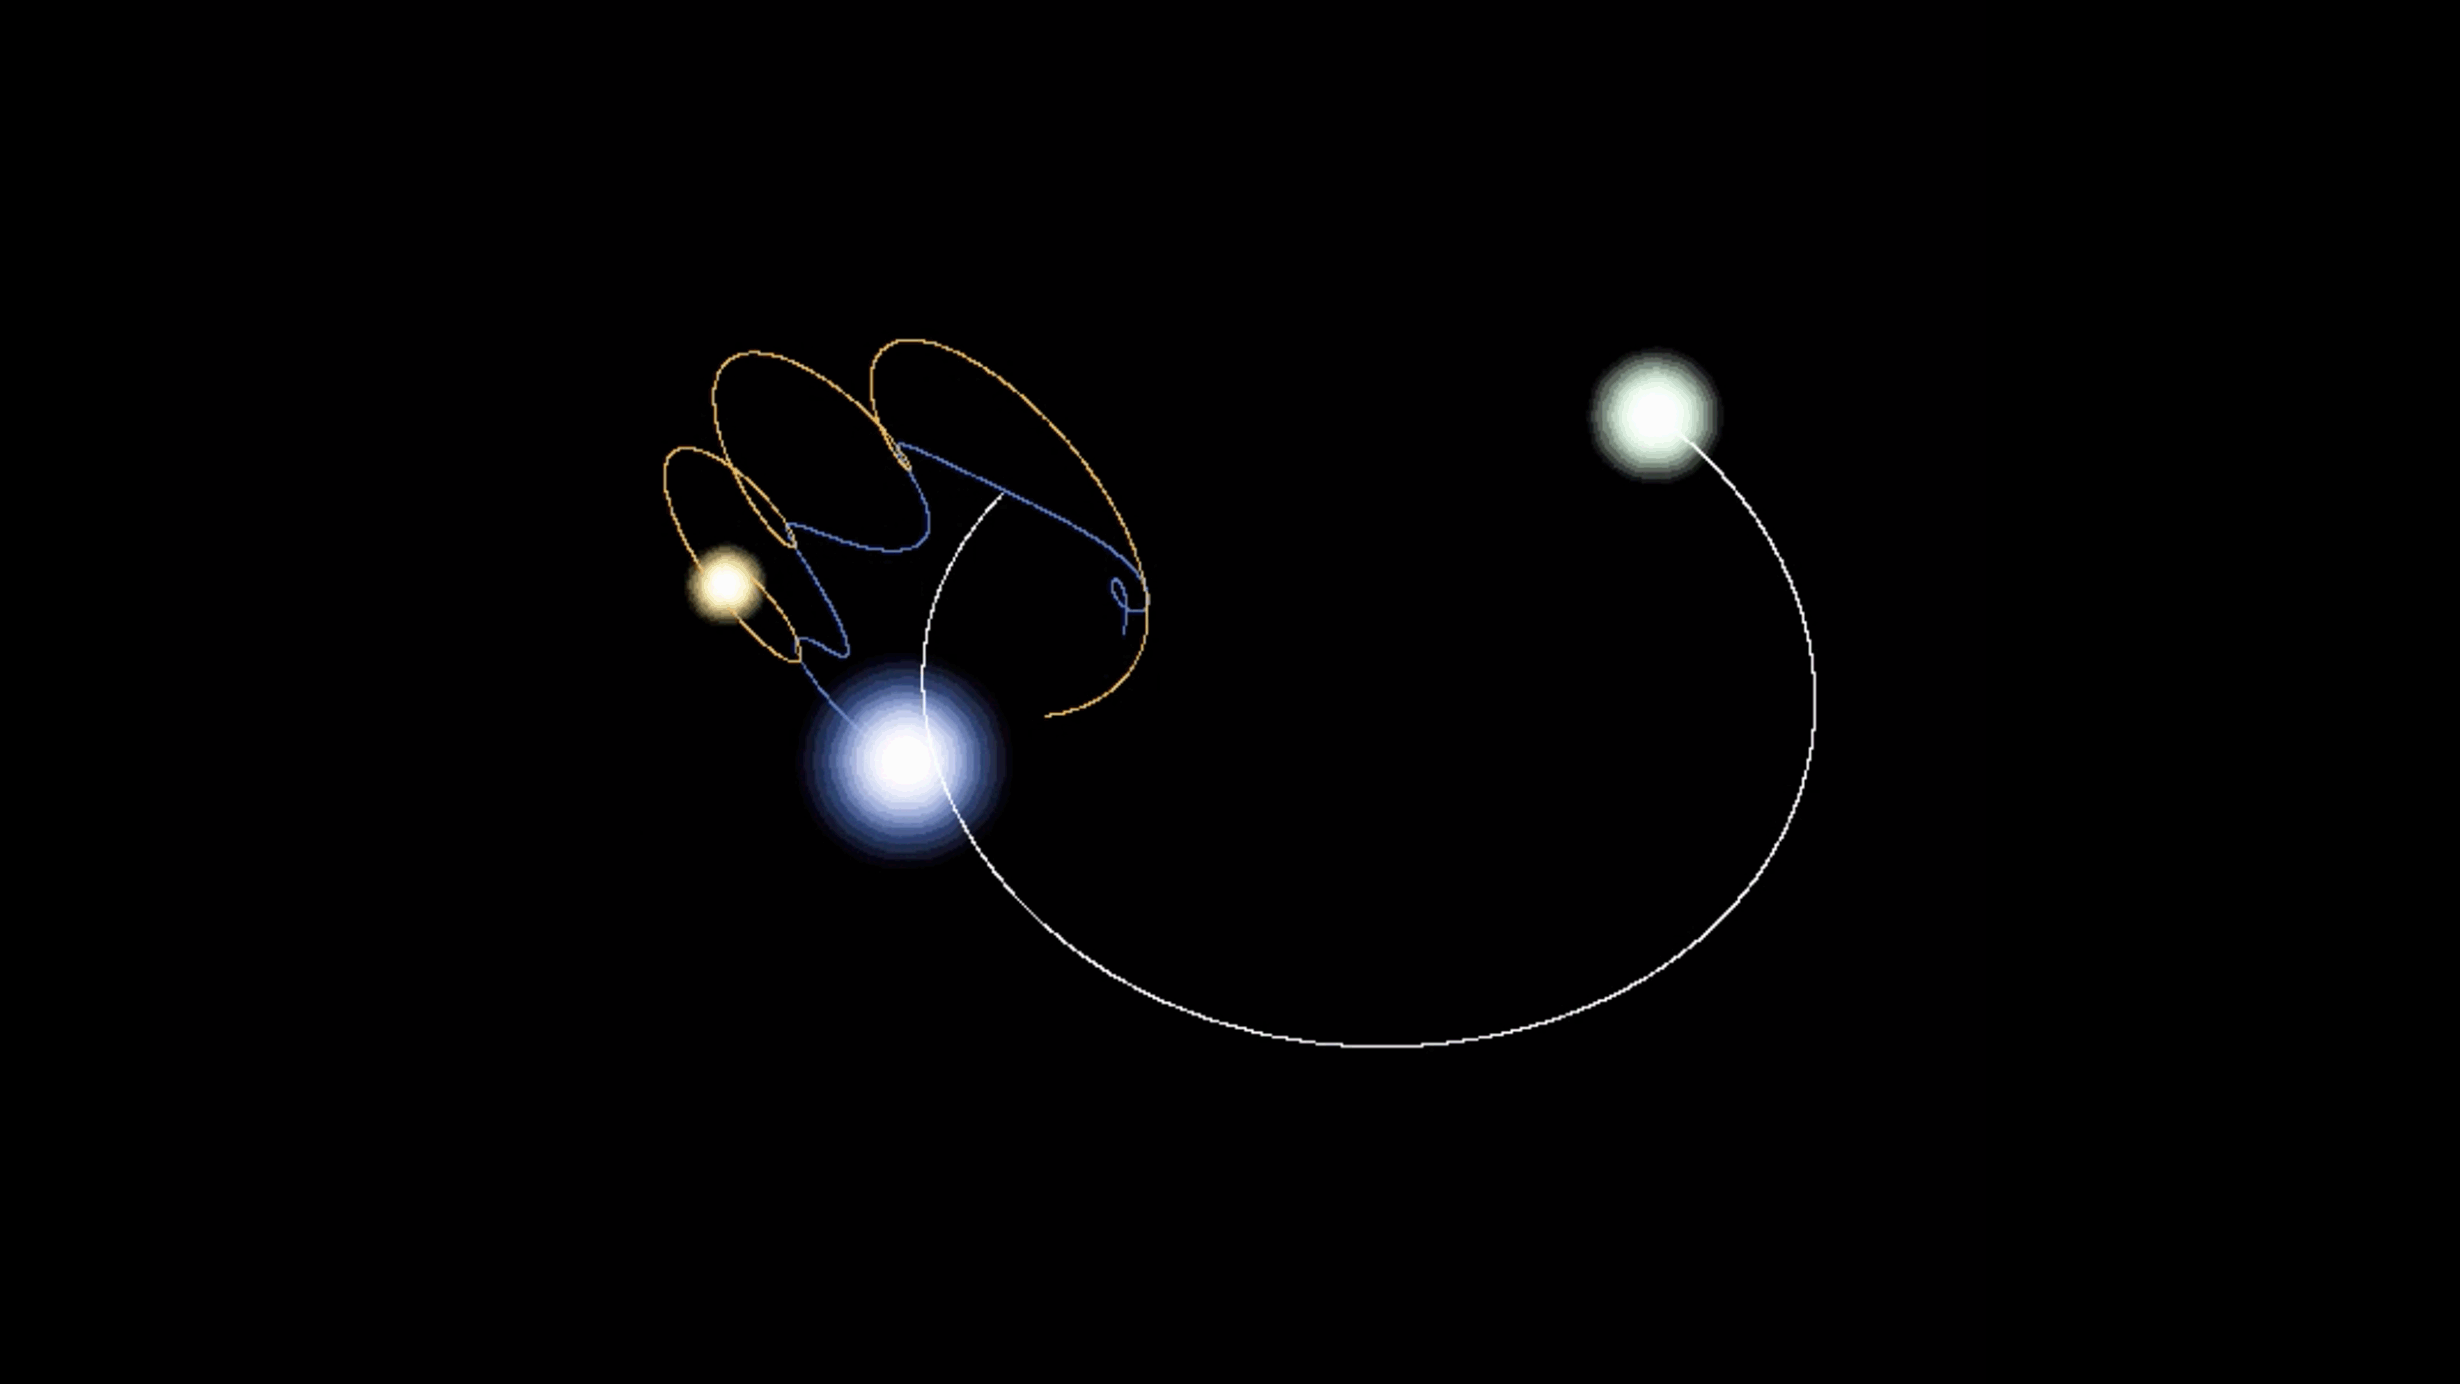 Digital rendering of three bodies orbiting each other in space. 